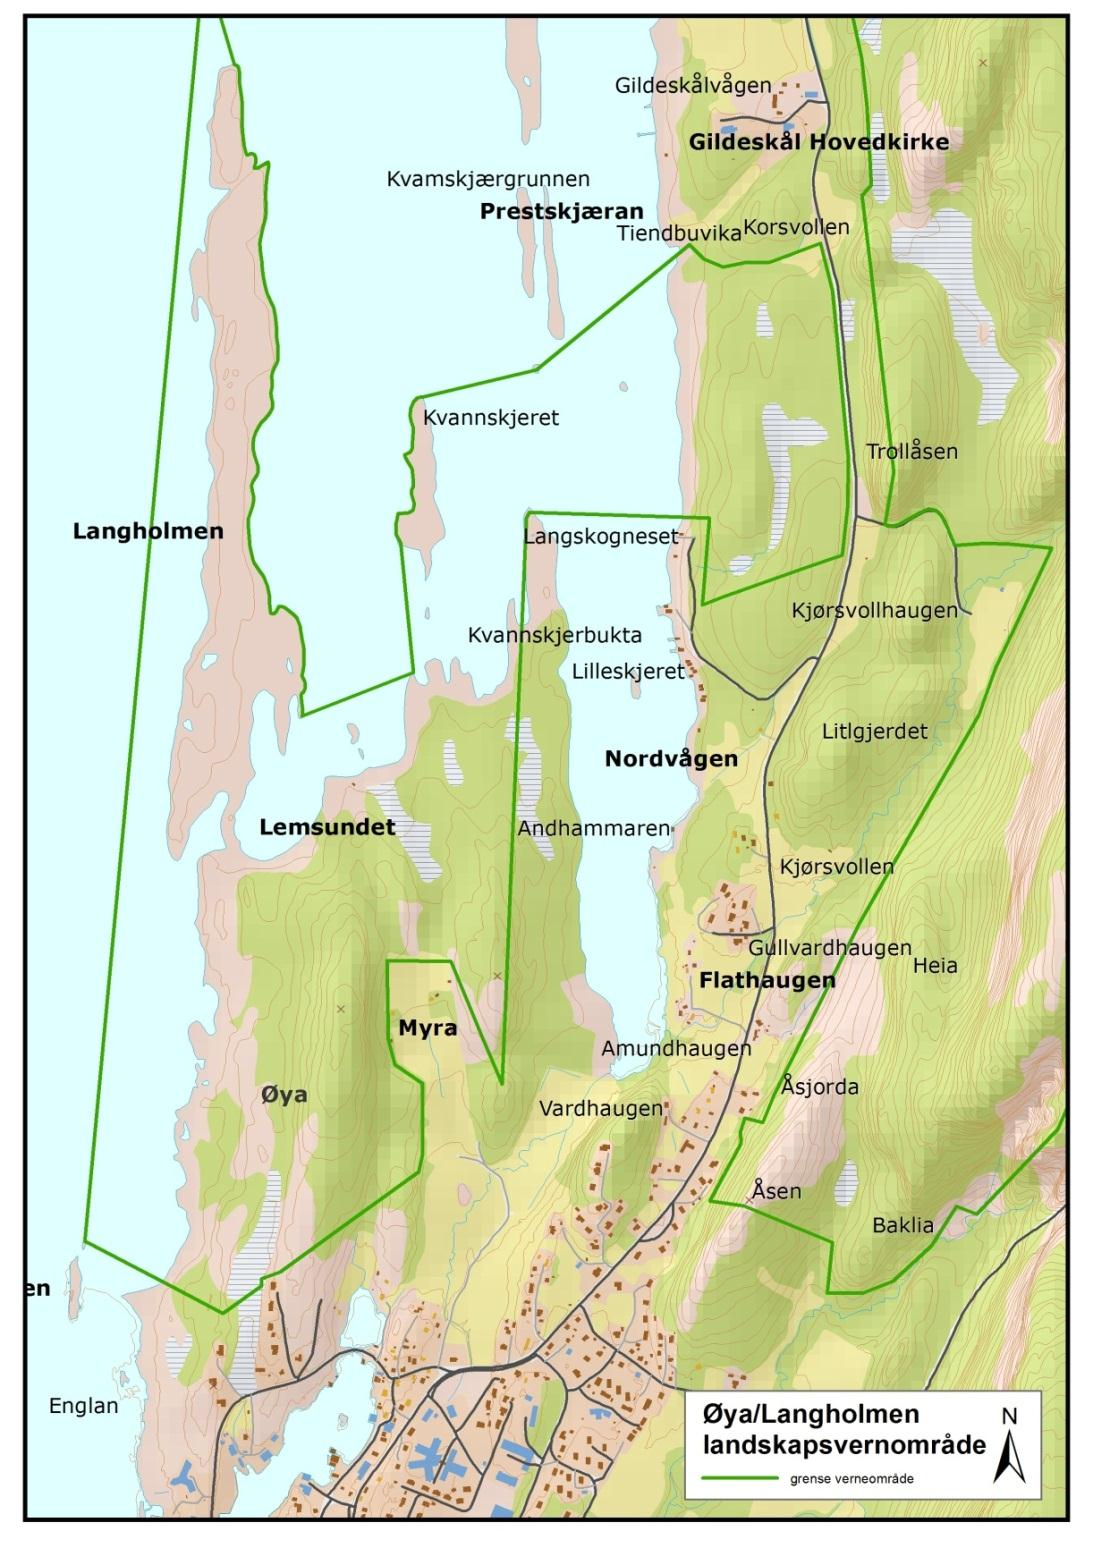 1 Innledning Øya/Langholmen landskapsvernområde ble vernet ved kongelig resolusjon 6. desember 2002. Landskapsvernområdet dekker et areal på 1 402 daa hvorav 613 daa er sjøareal (figur 1).